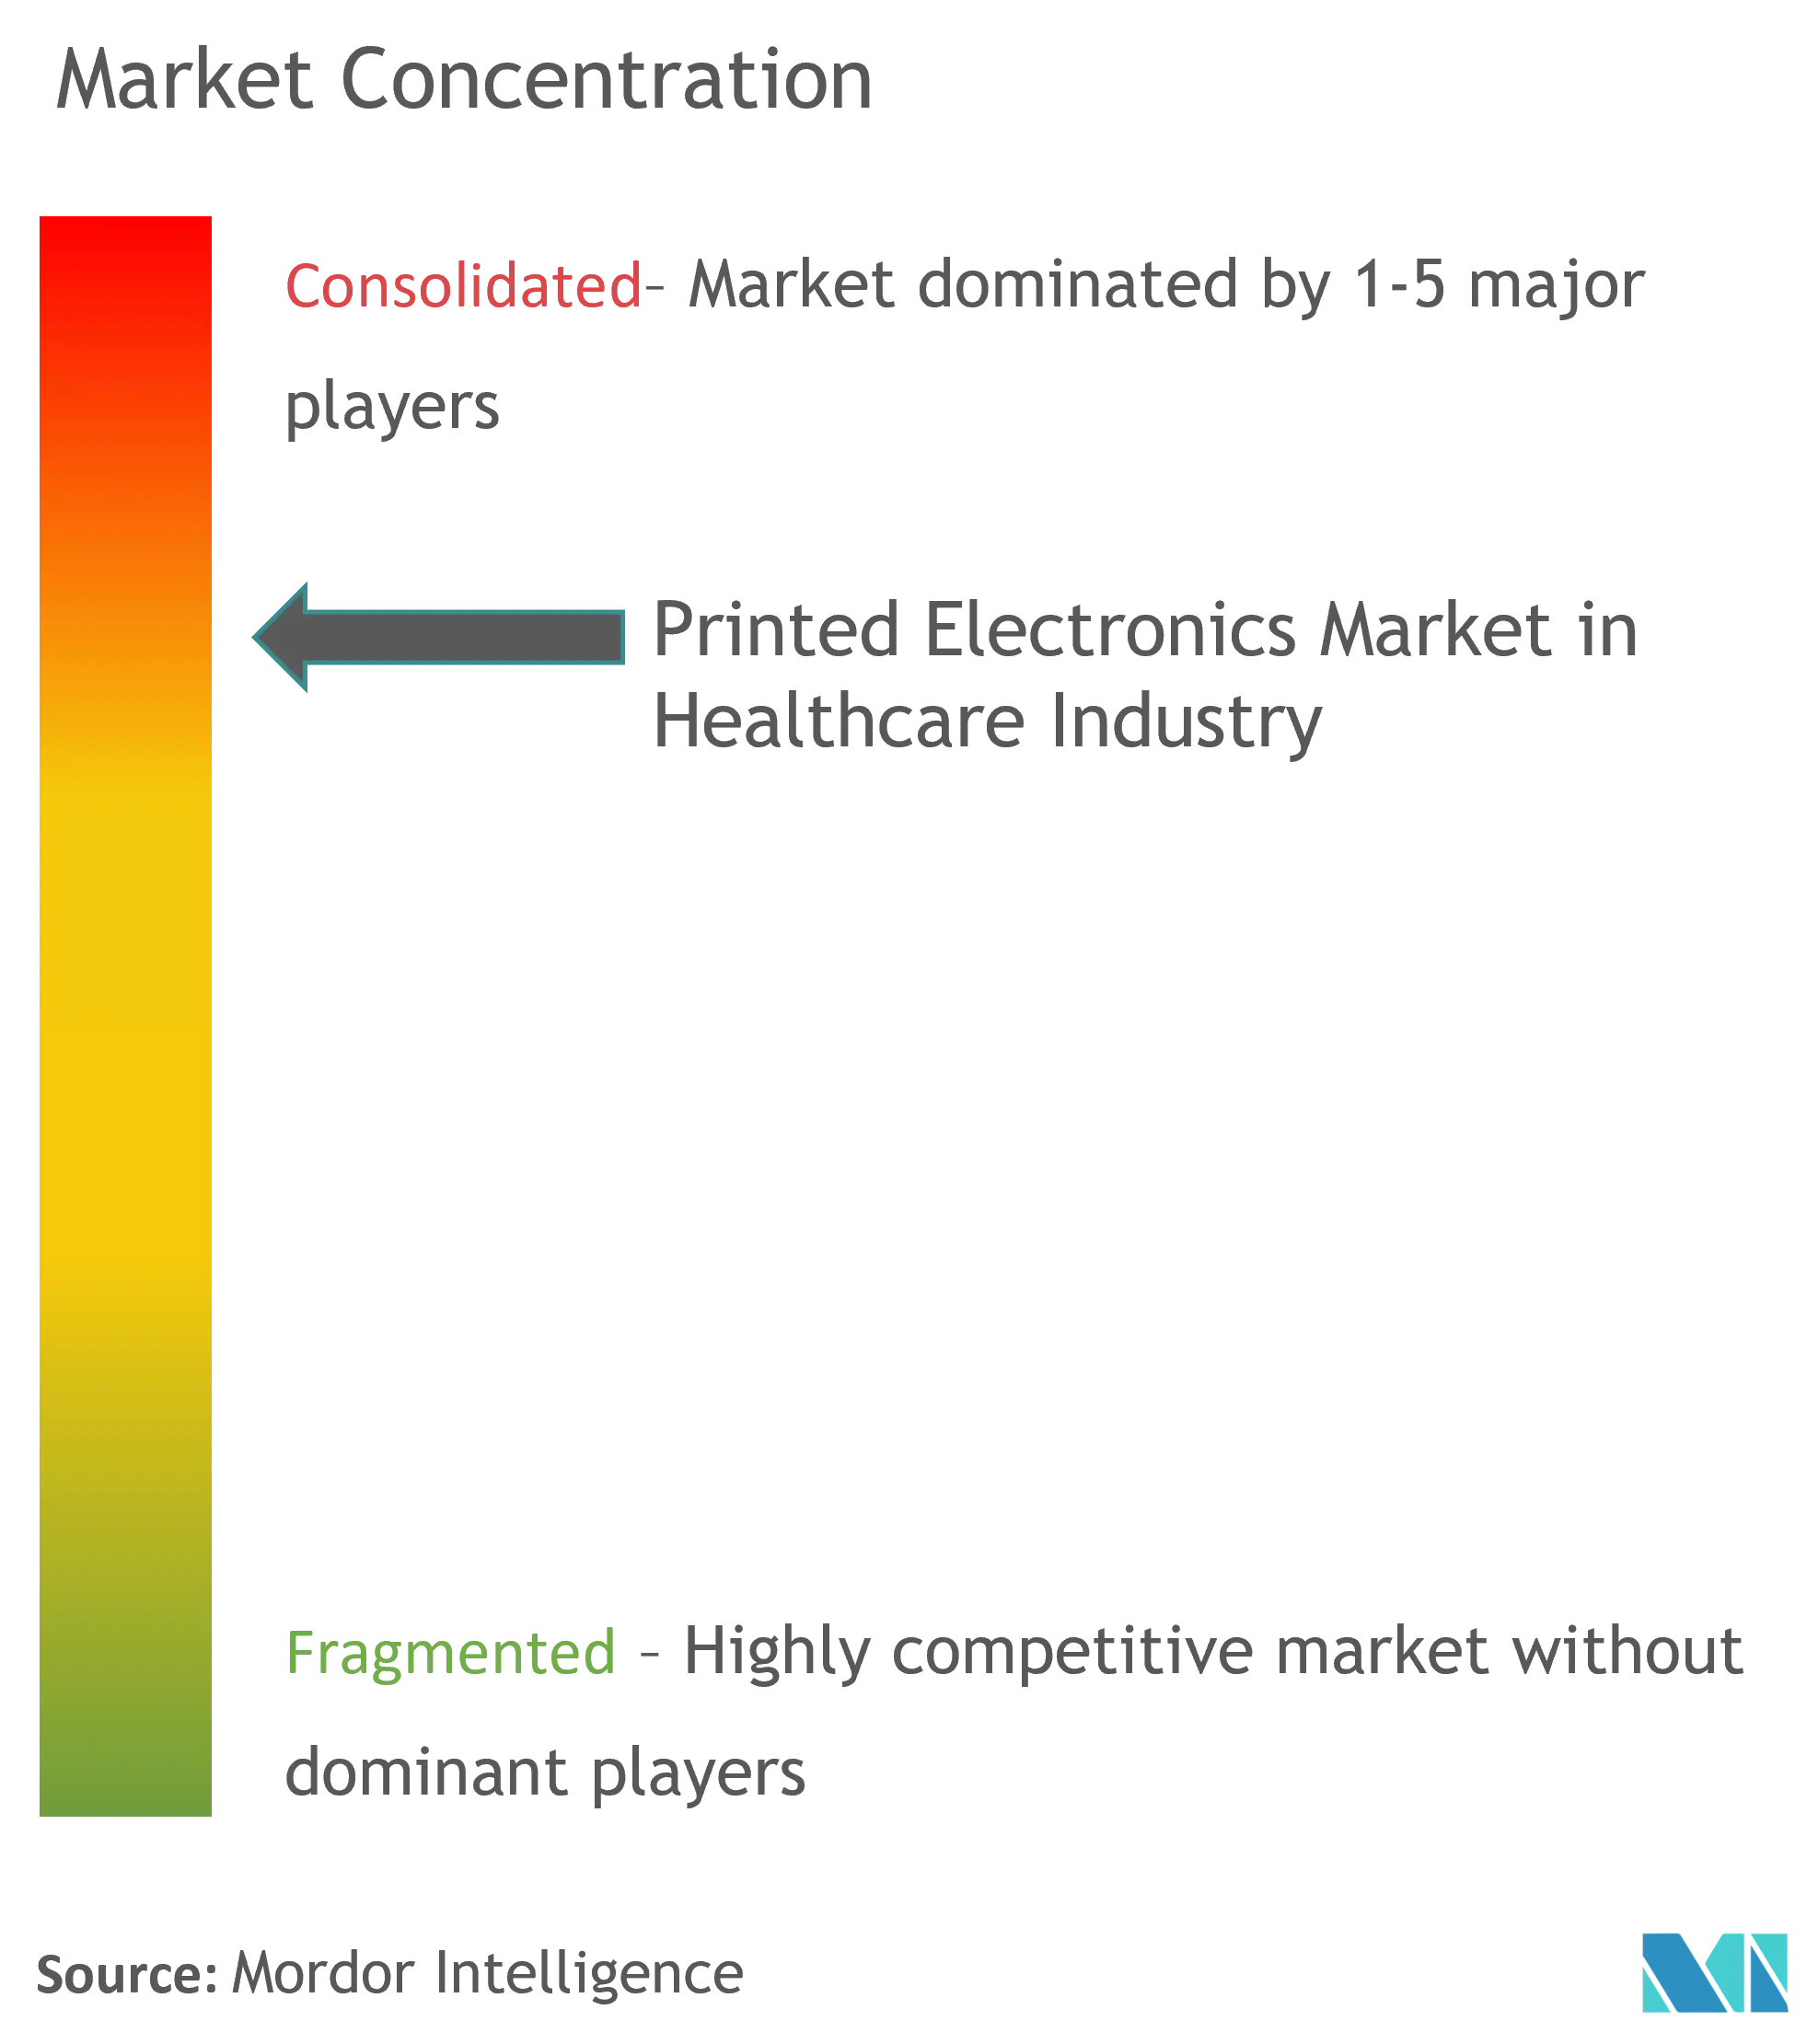 ヘルスケア産業におけるプリンテッドエレクトロニクス市場 - 市場集中度